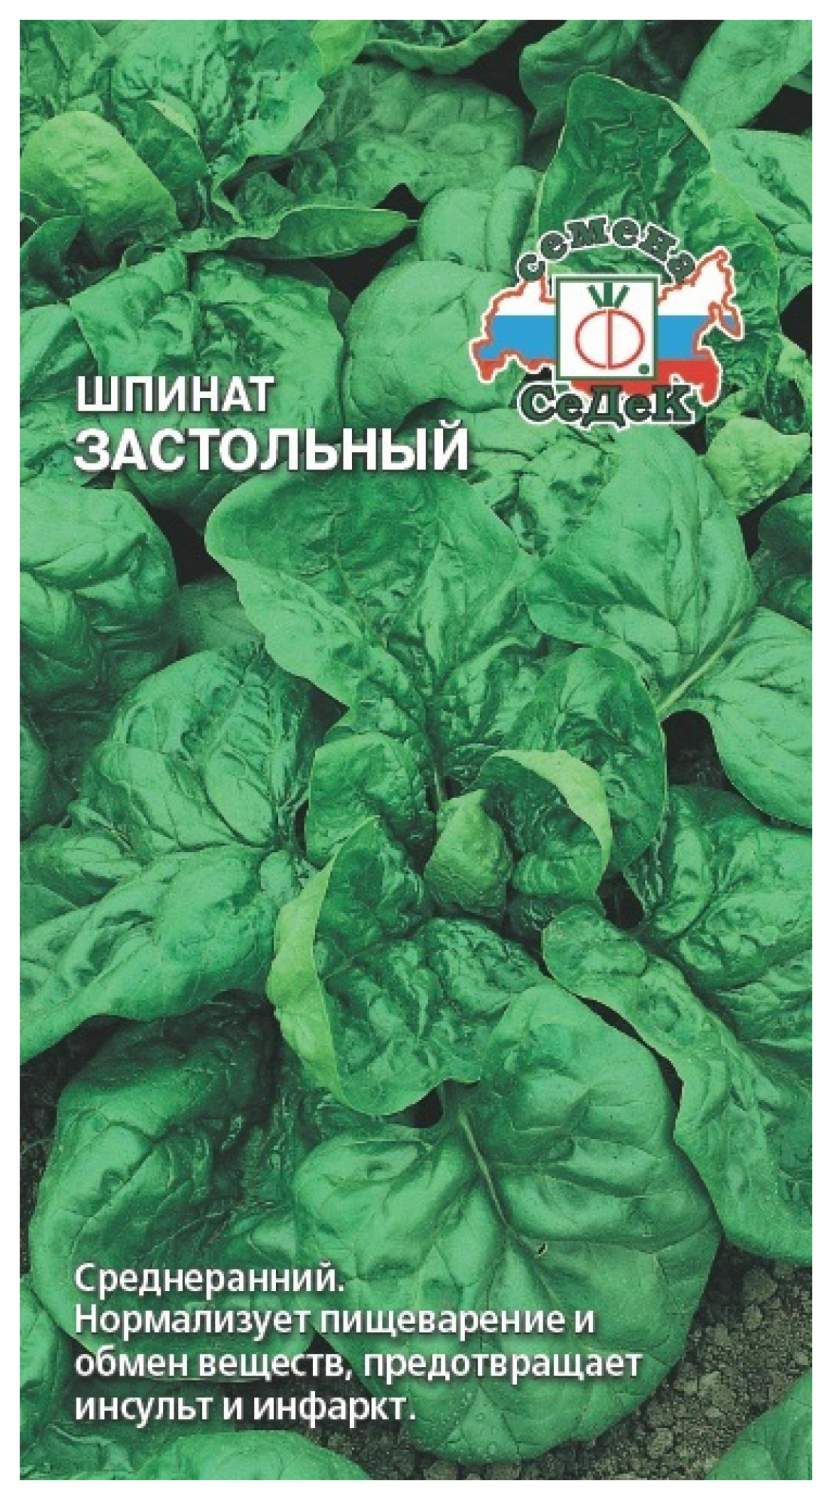 Семена Шпинат Застольный, 2 г СеДеК - купить в Москве, цены на Мегамаркет